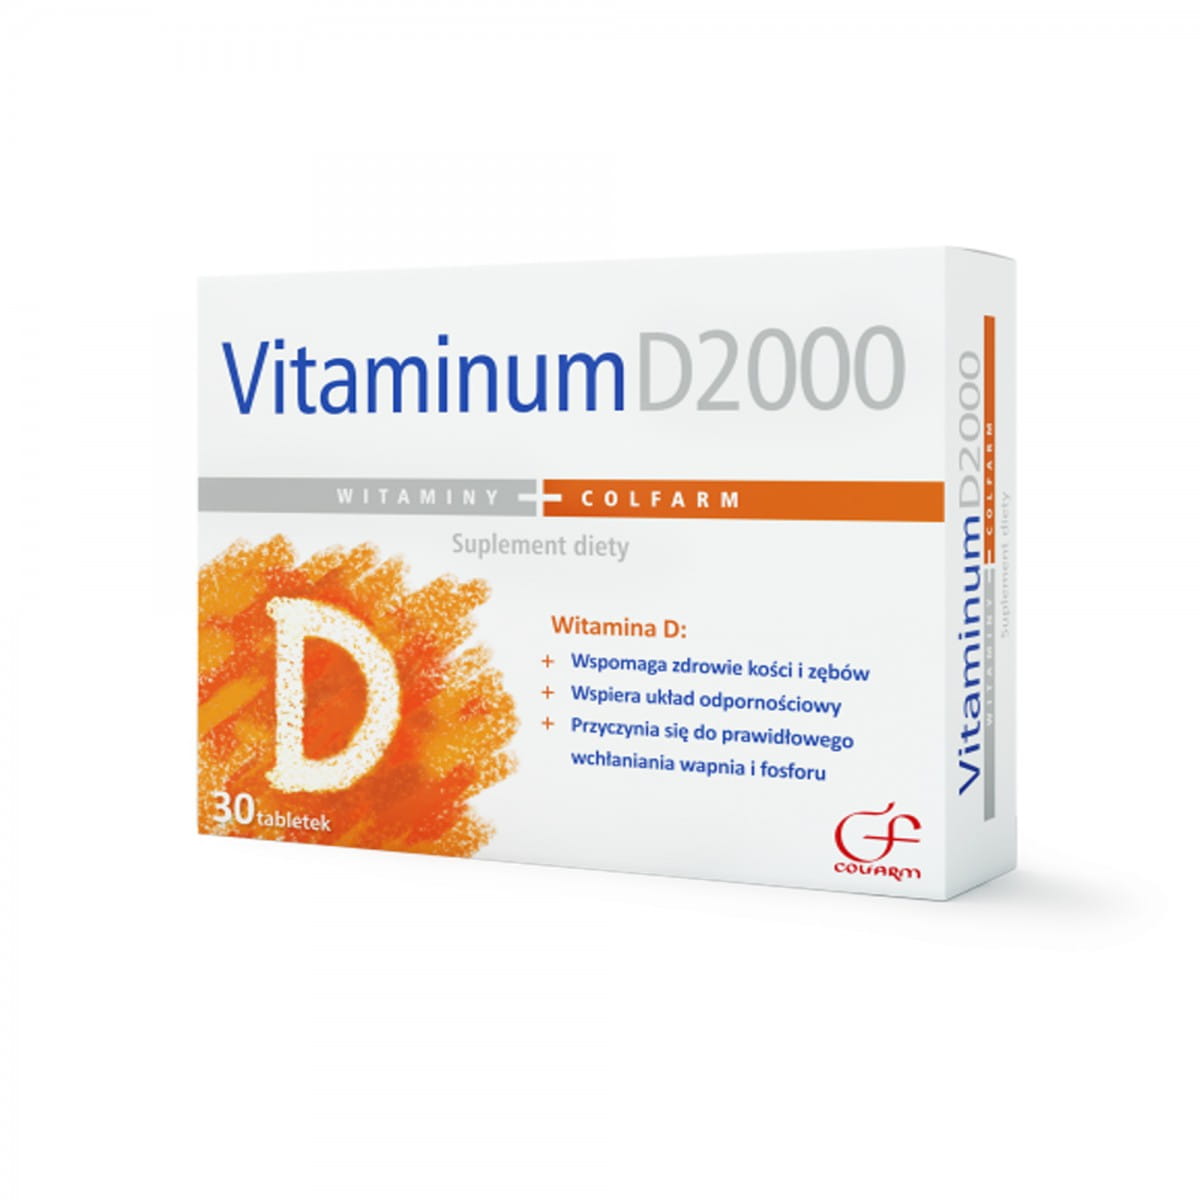 Vitaminum D2000 30 capsulas COLFARM